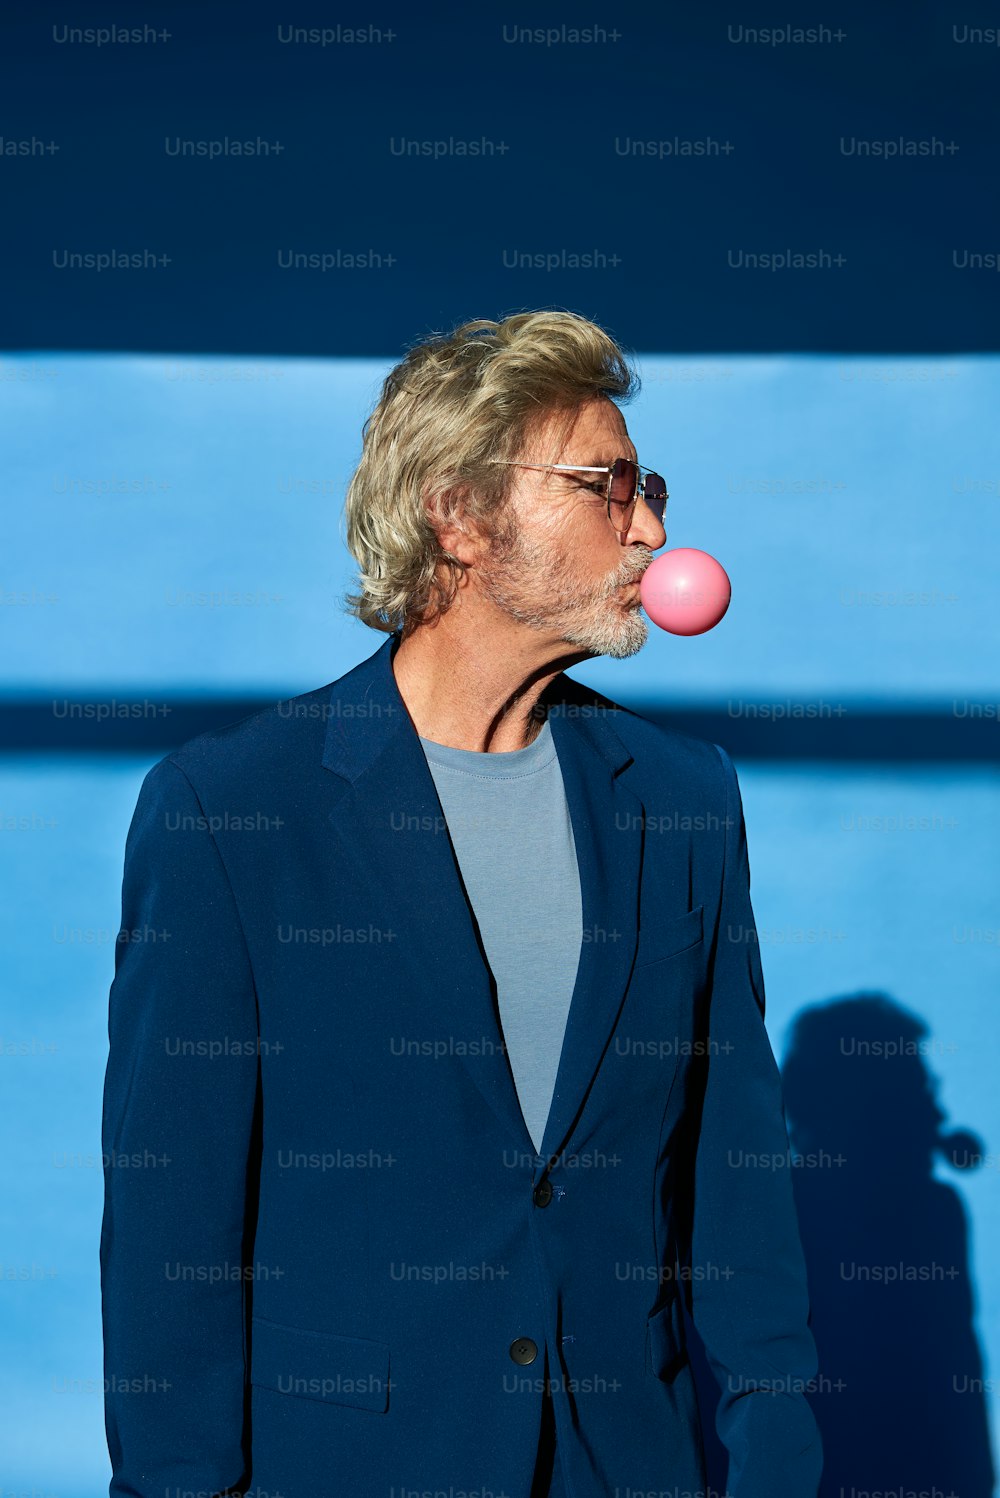 Un homme en costume soufflant une bulle rose